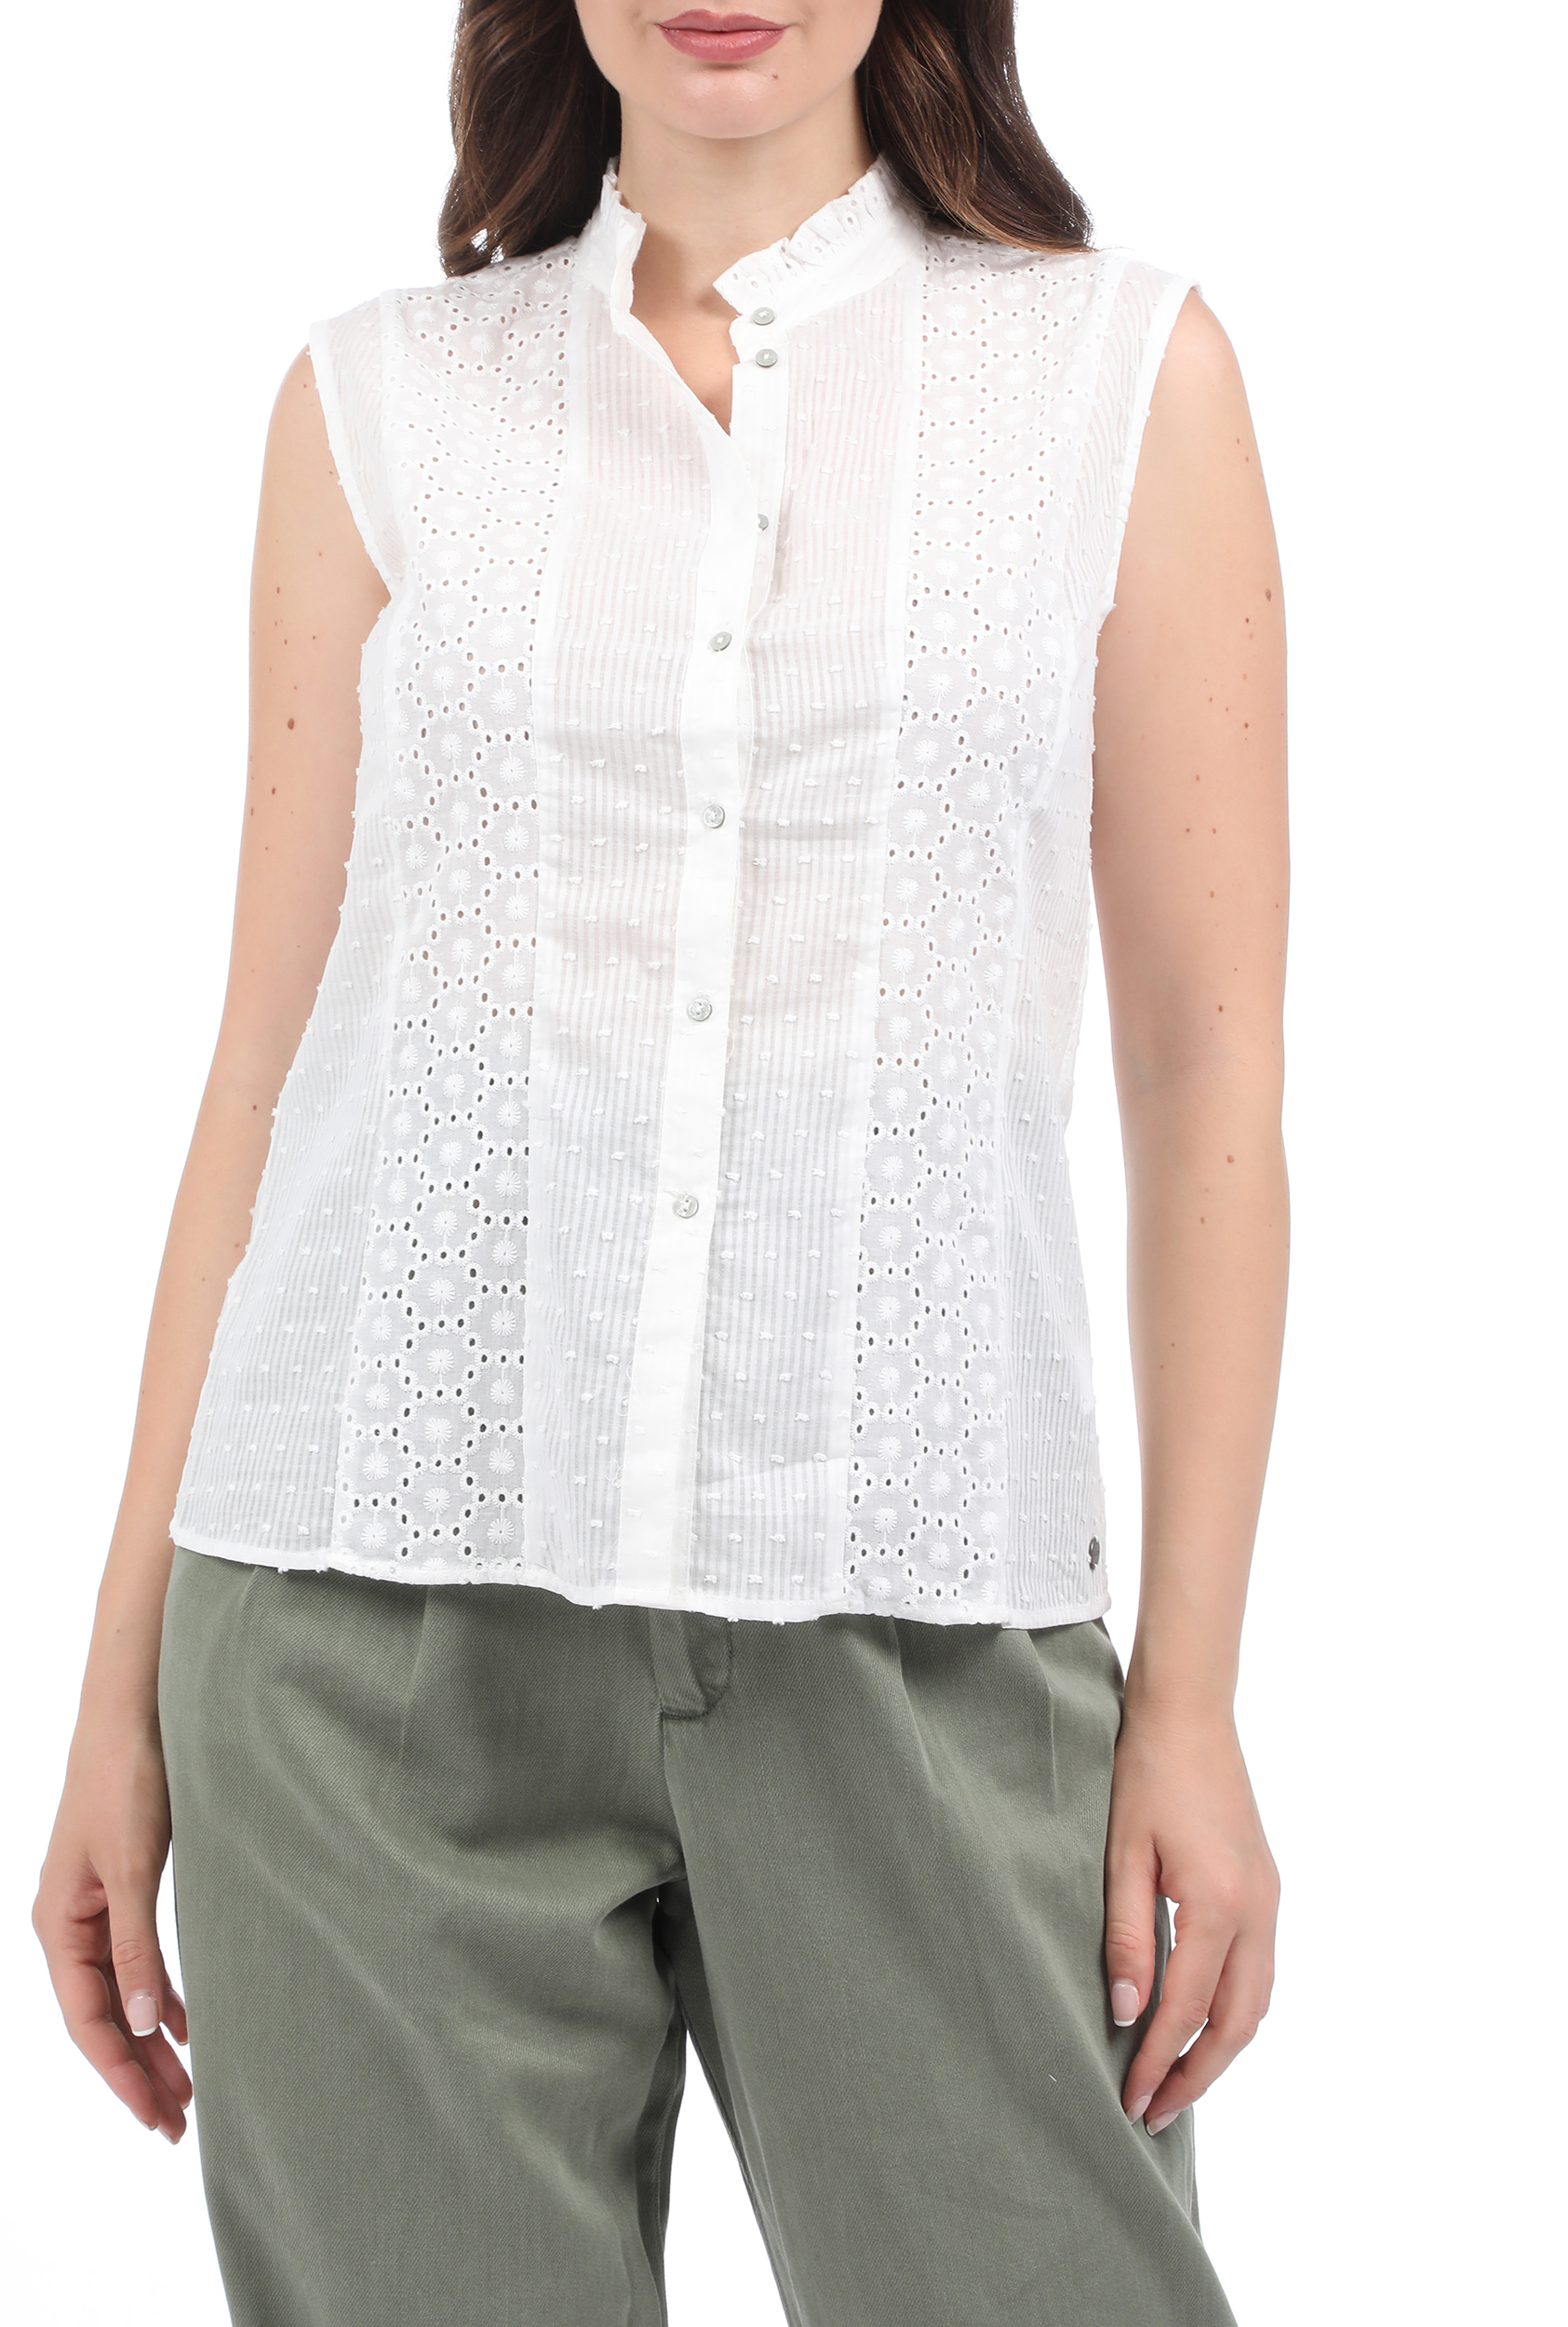 Γυναικεία/Ρούχα/Πουκάμισα/Κοντομάνικα-Αμάνικα GARCIA JEANS - Γυναικείο πουκάμισο GARCIA JEANS λευκό